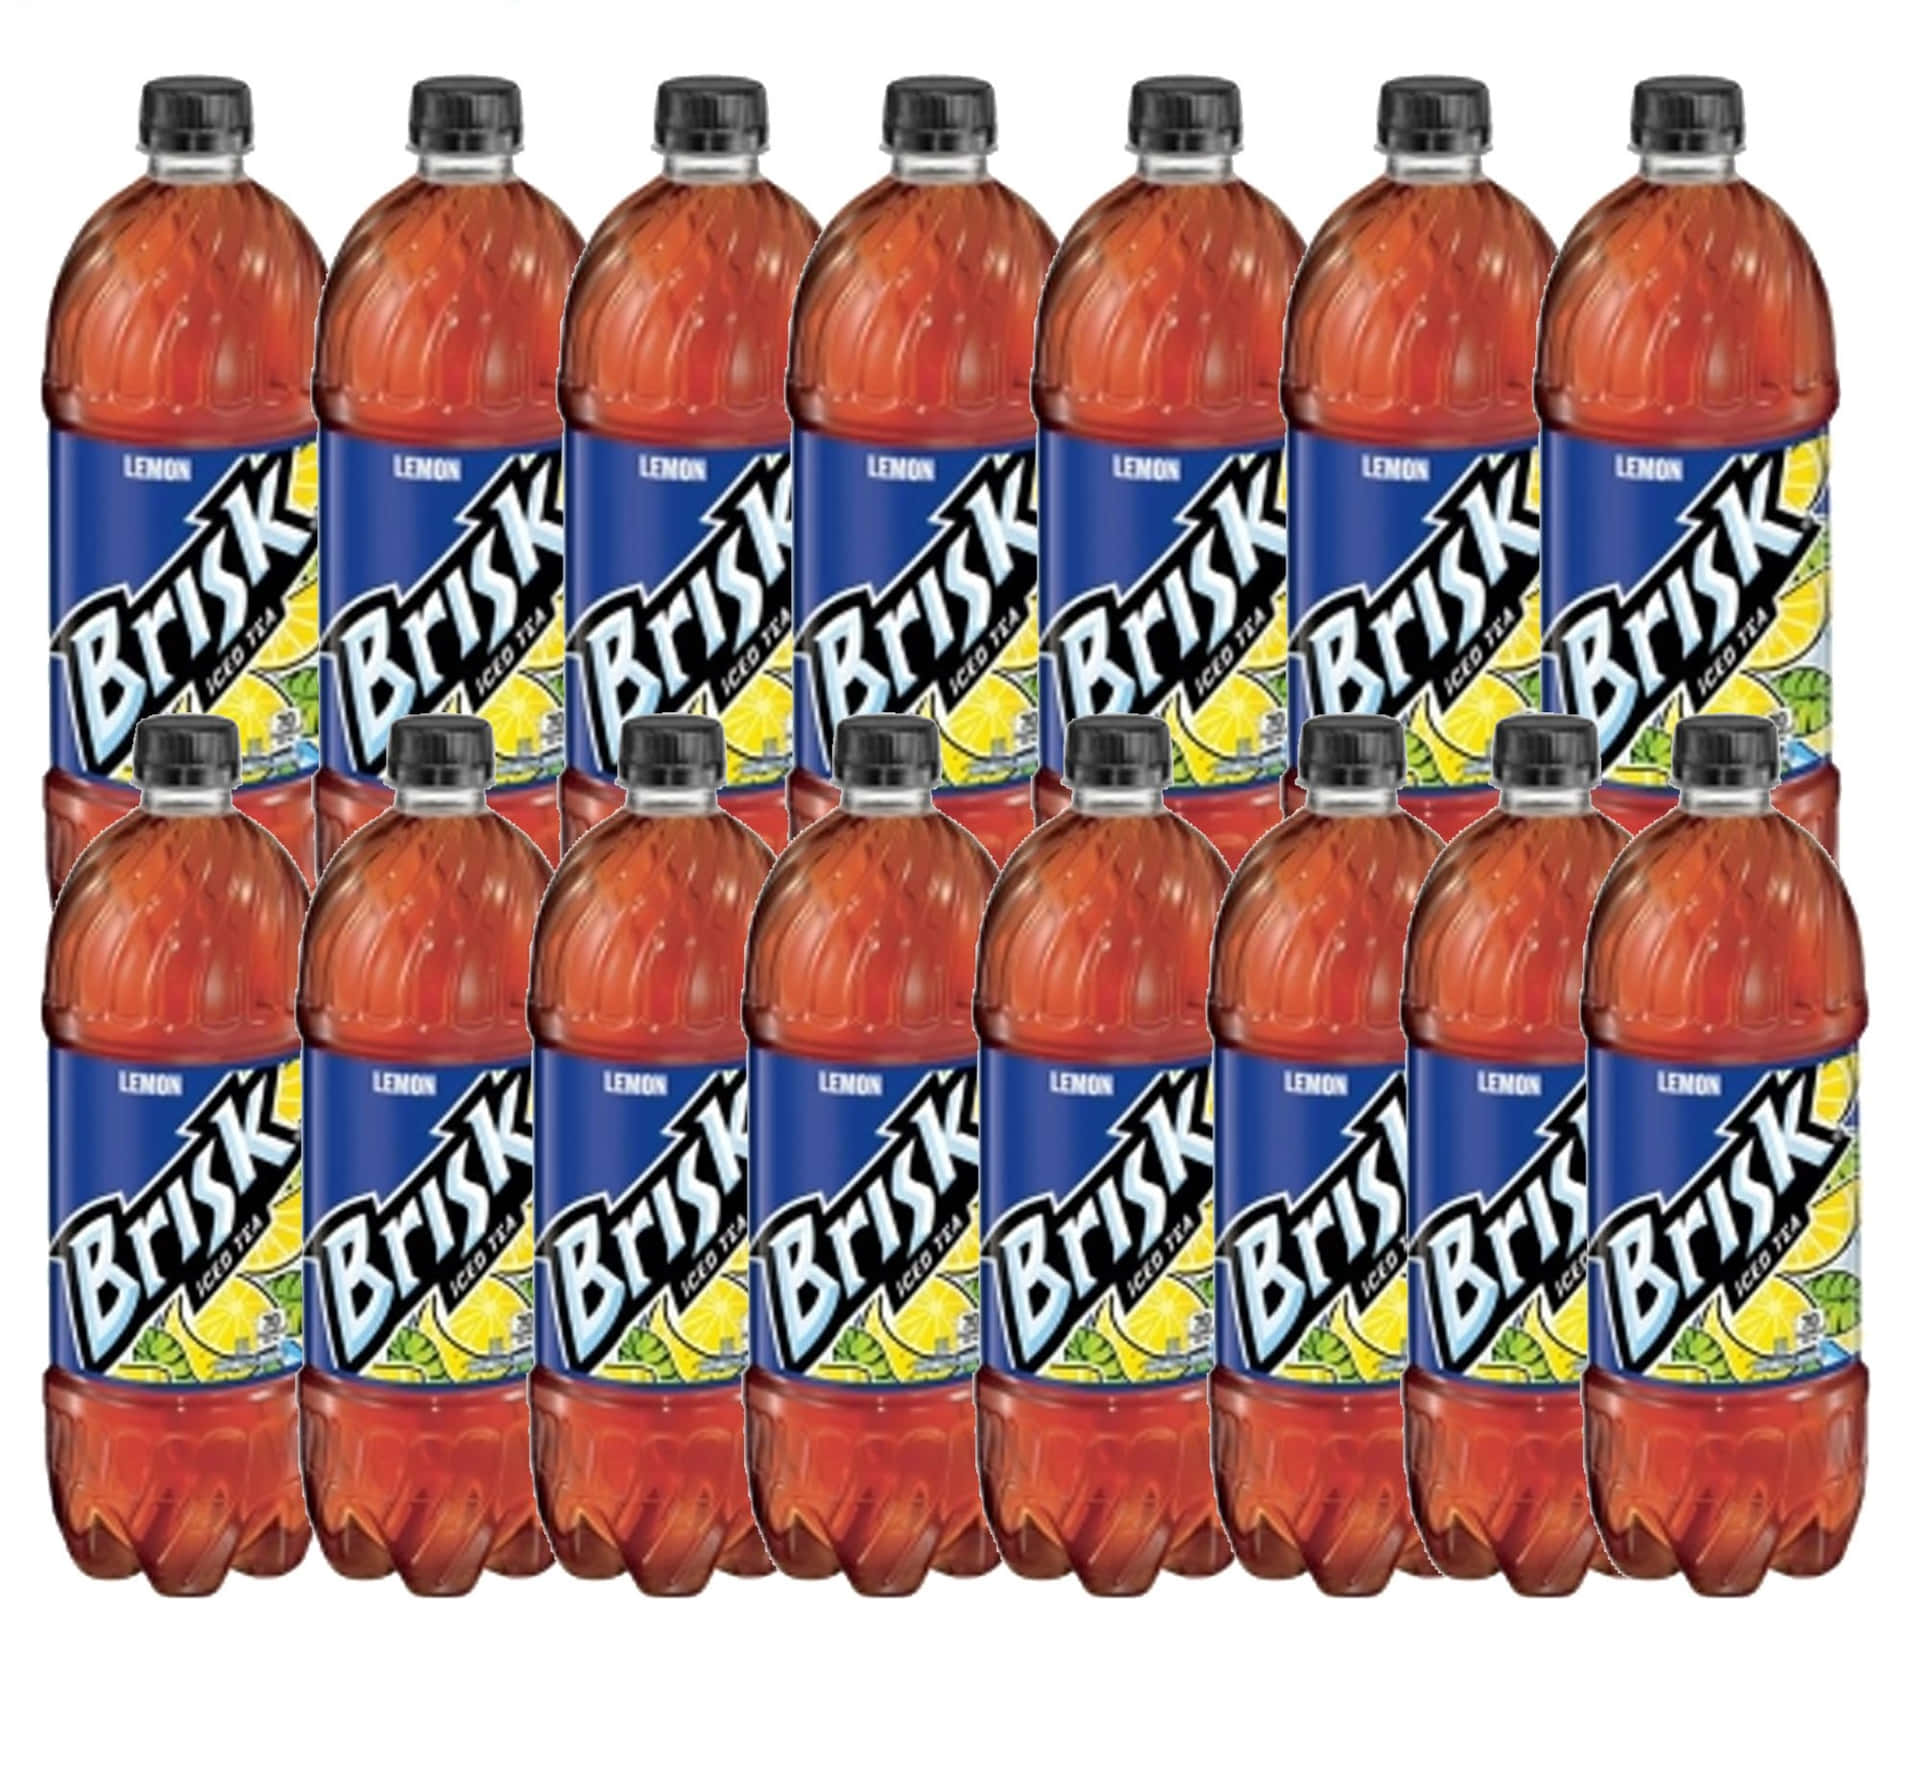 Fourteen Bottles Of Brisk Drinks Wallpaper